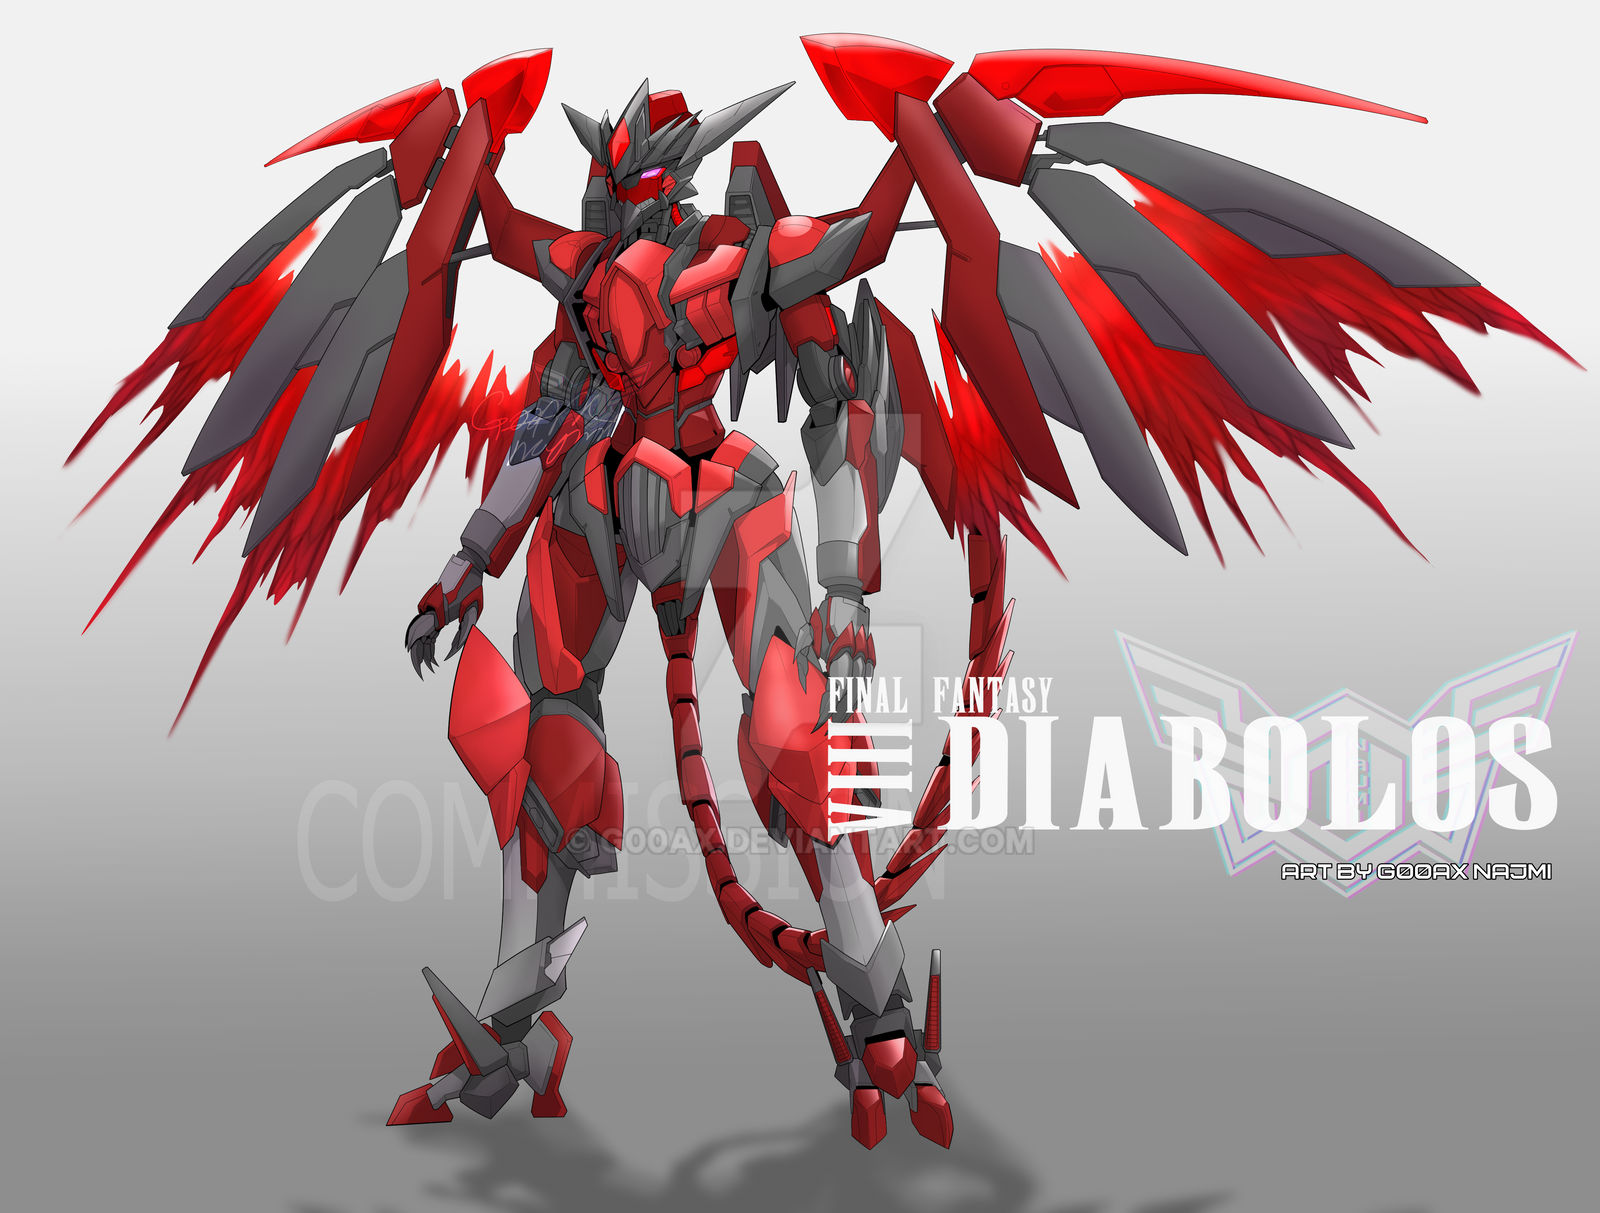 Diablos Final Fantasy VIII - cosplay by Gianpaolo88 on DeviantArt